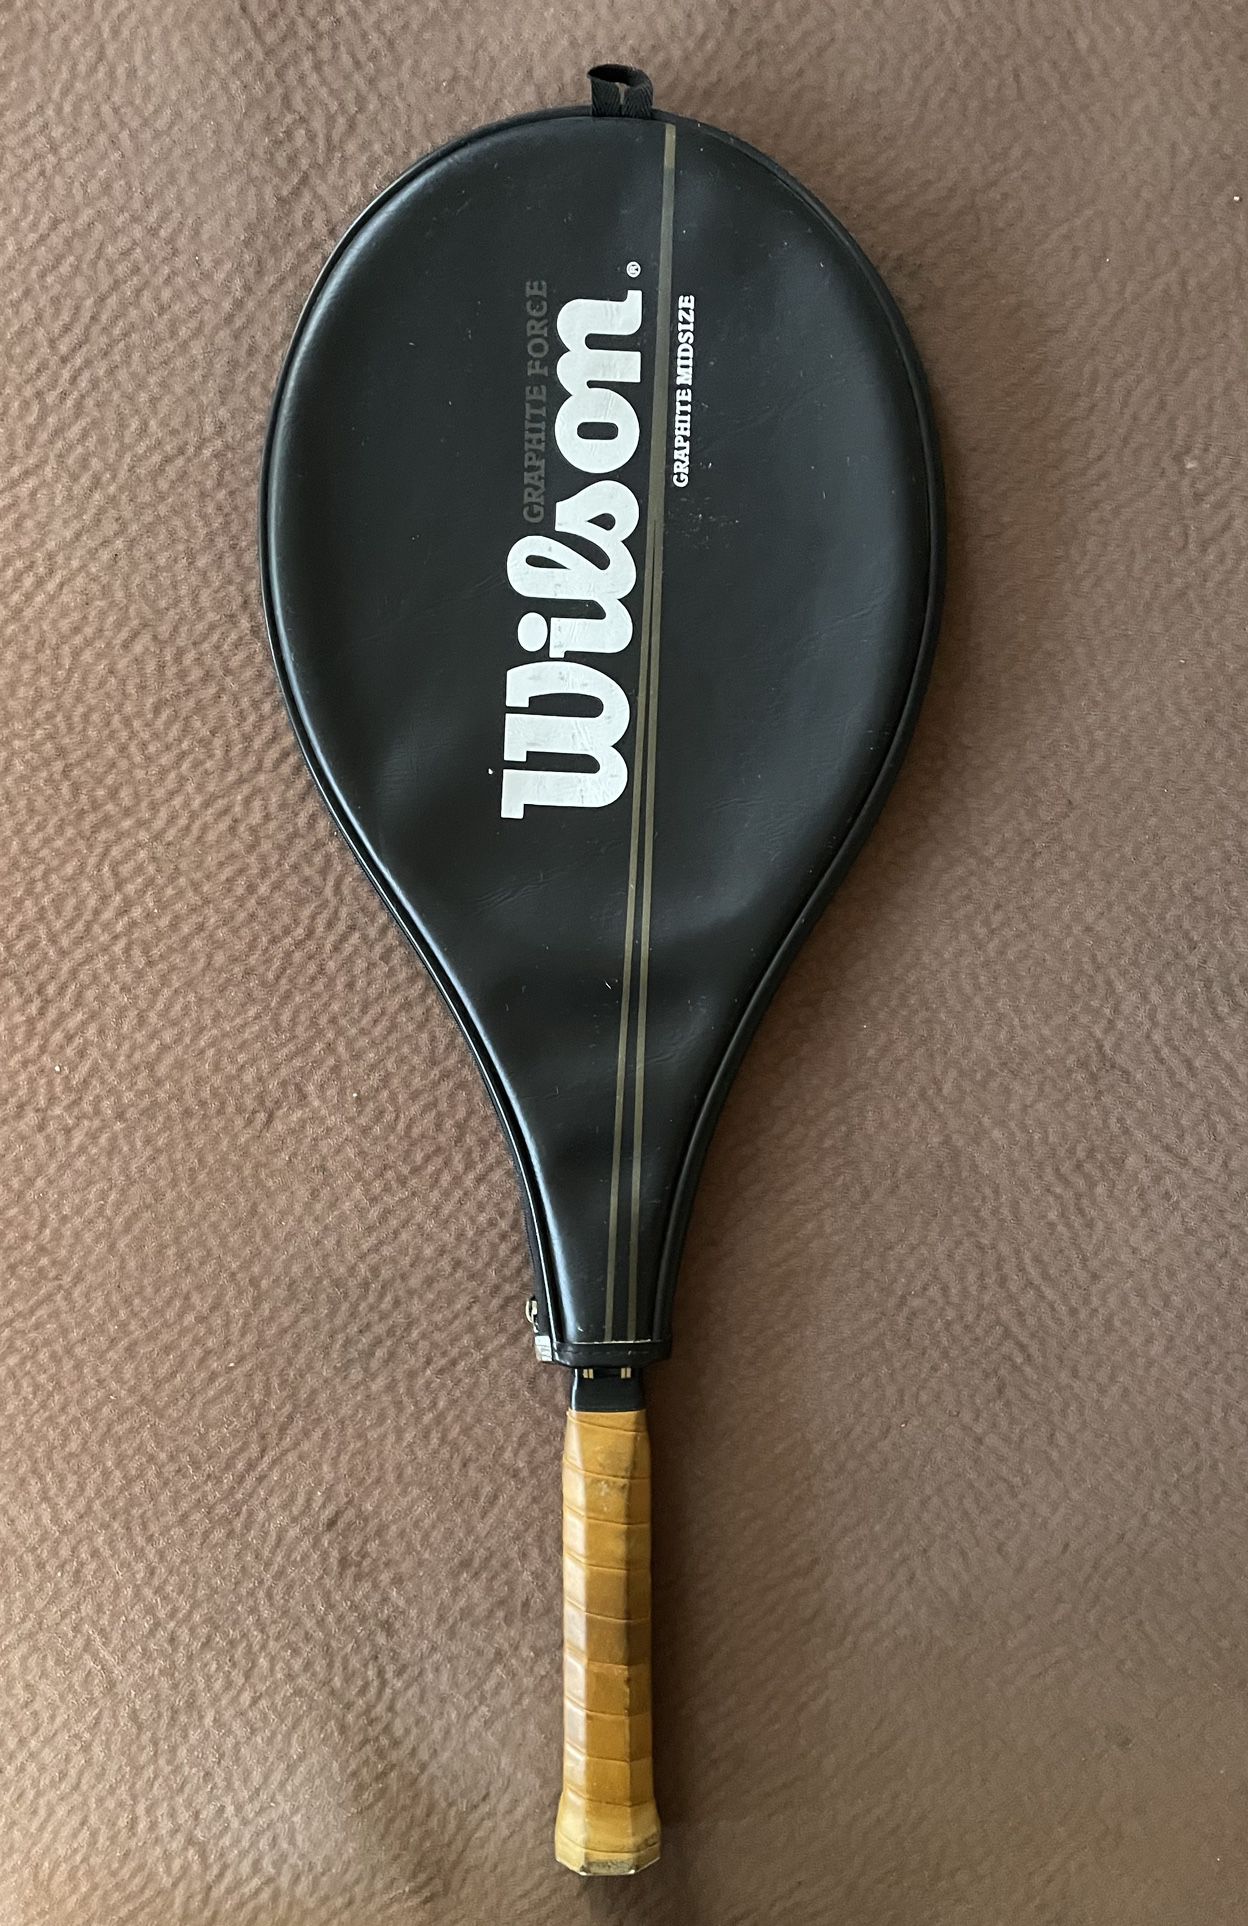 Wilson Graphite Force Graphite Composite Midsize Tennis Racket 4 3/8 L3 Grip